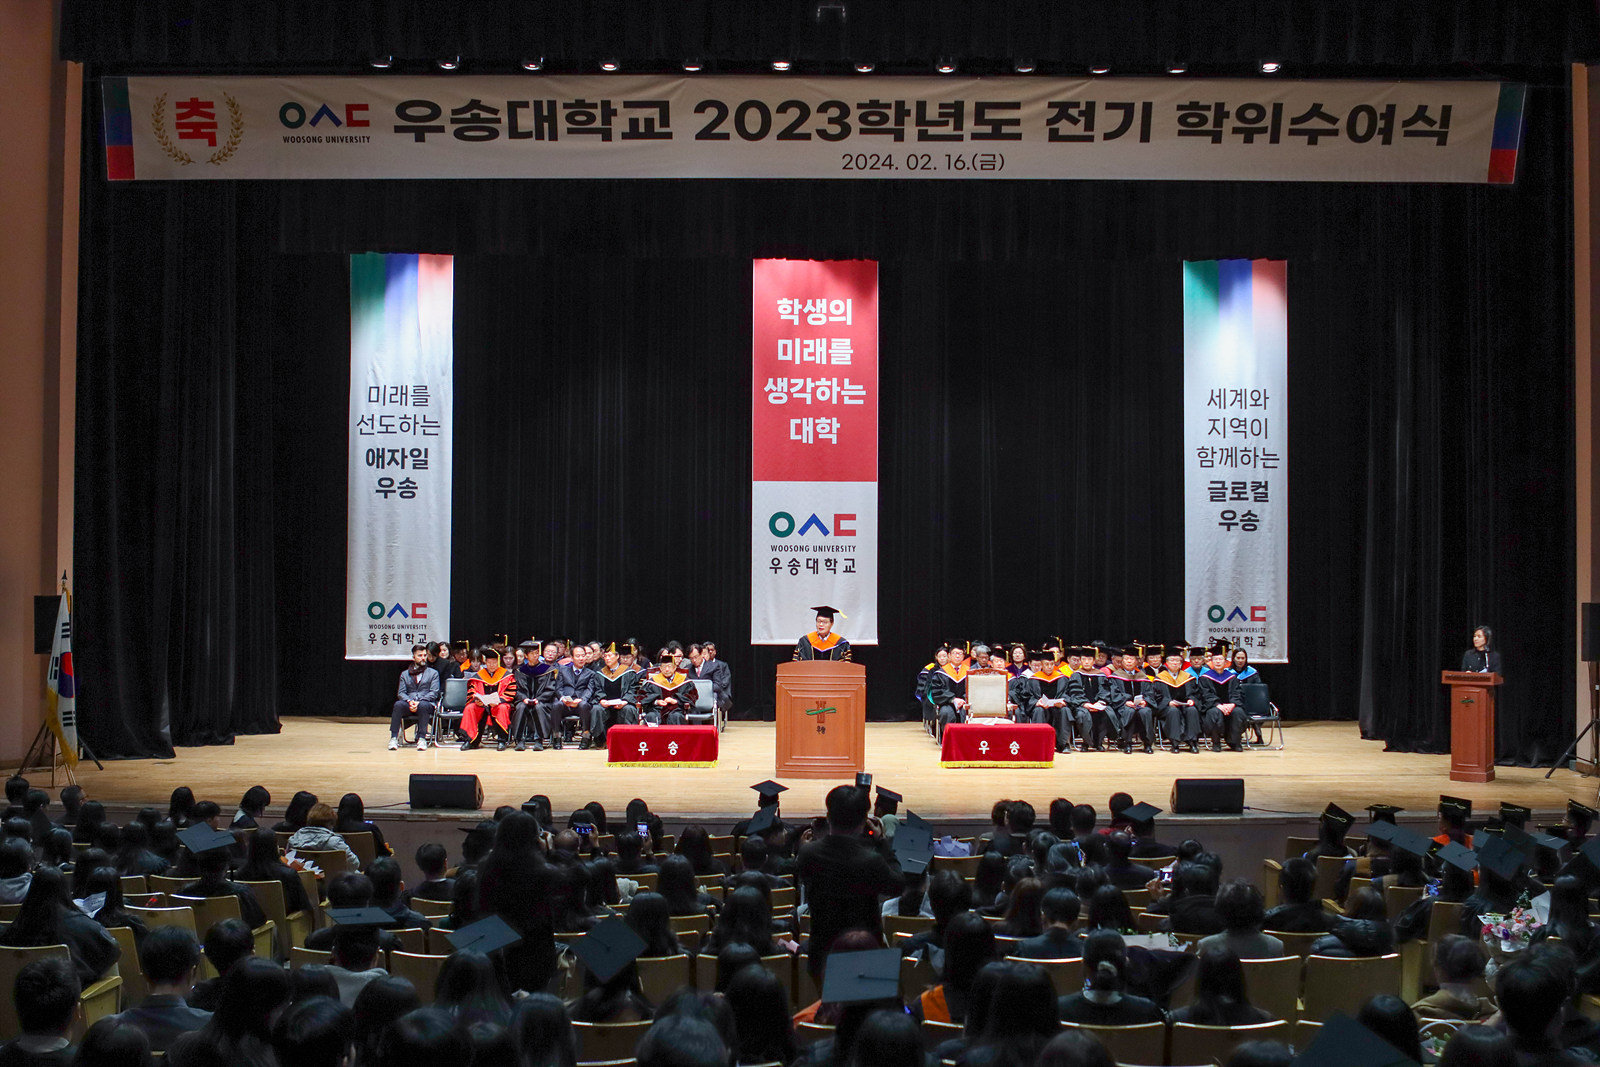 2023학년도 전기 학위수여식(졸업식)